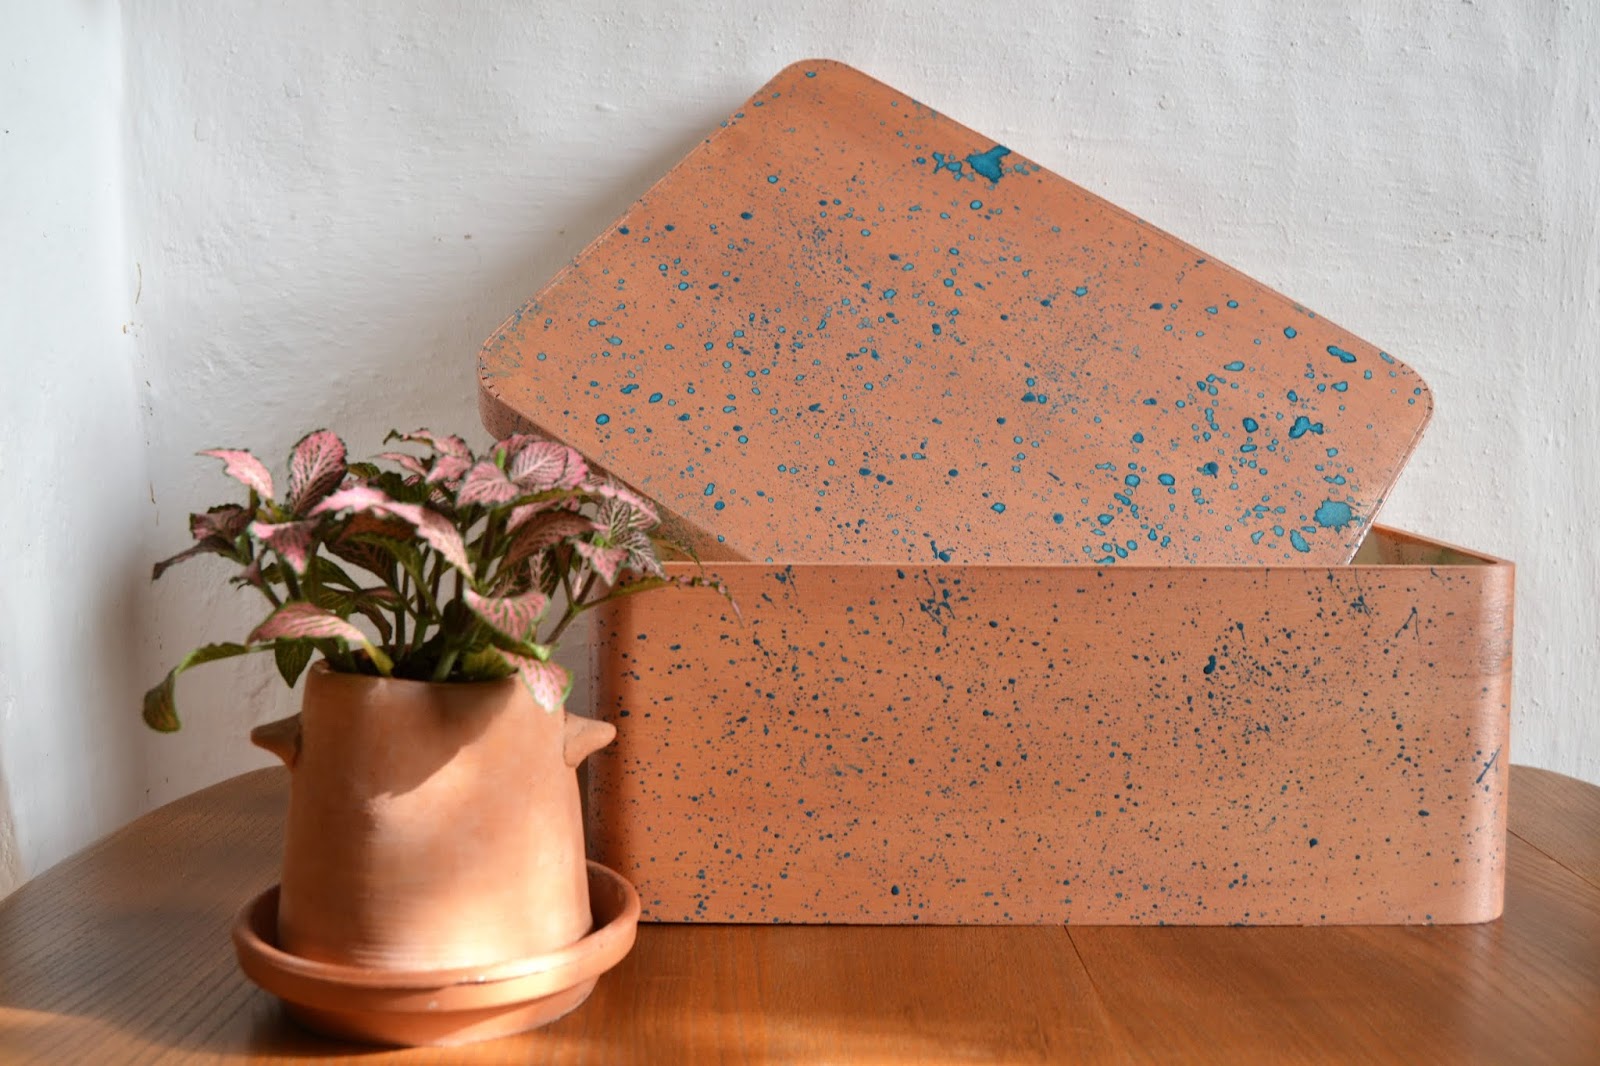 Diy cajas de madera pintadas con la técnica de splatter, gracias a Fleur Paint muestro como se hace una tendencia decorativa dinámica y espontanea como es el splatter